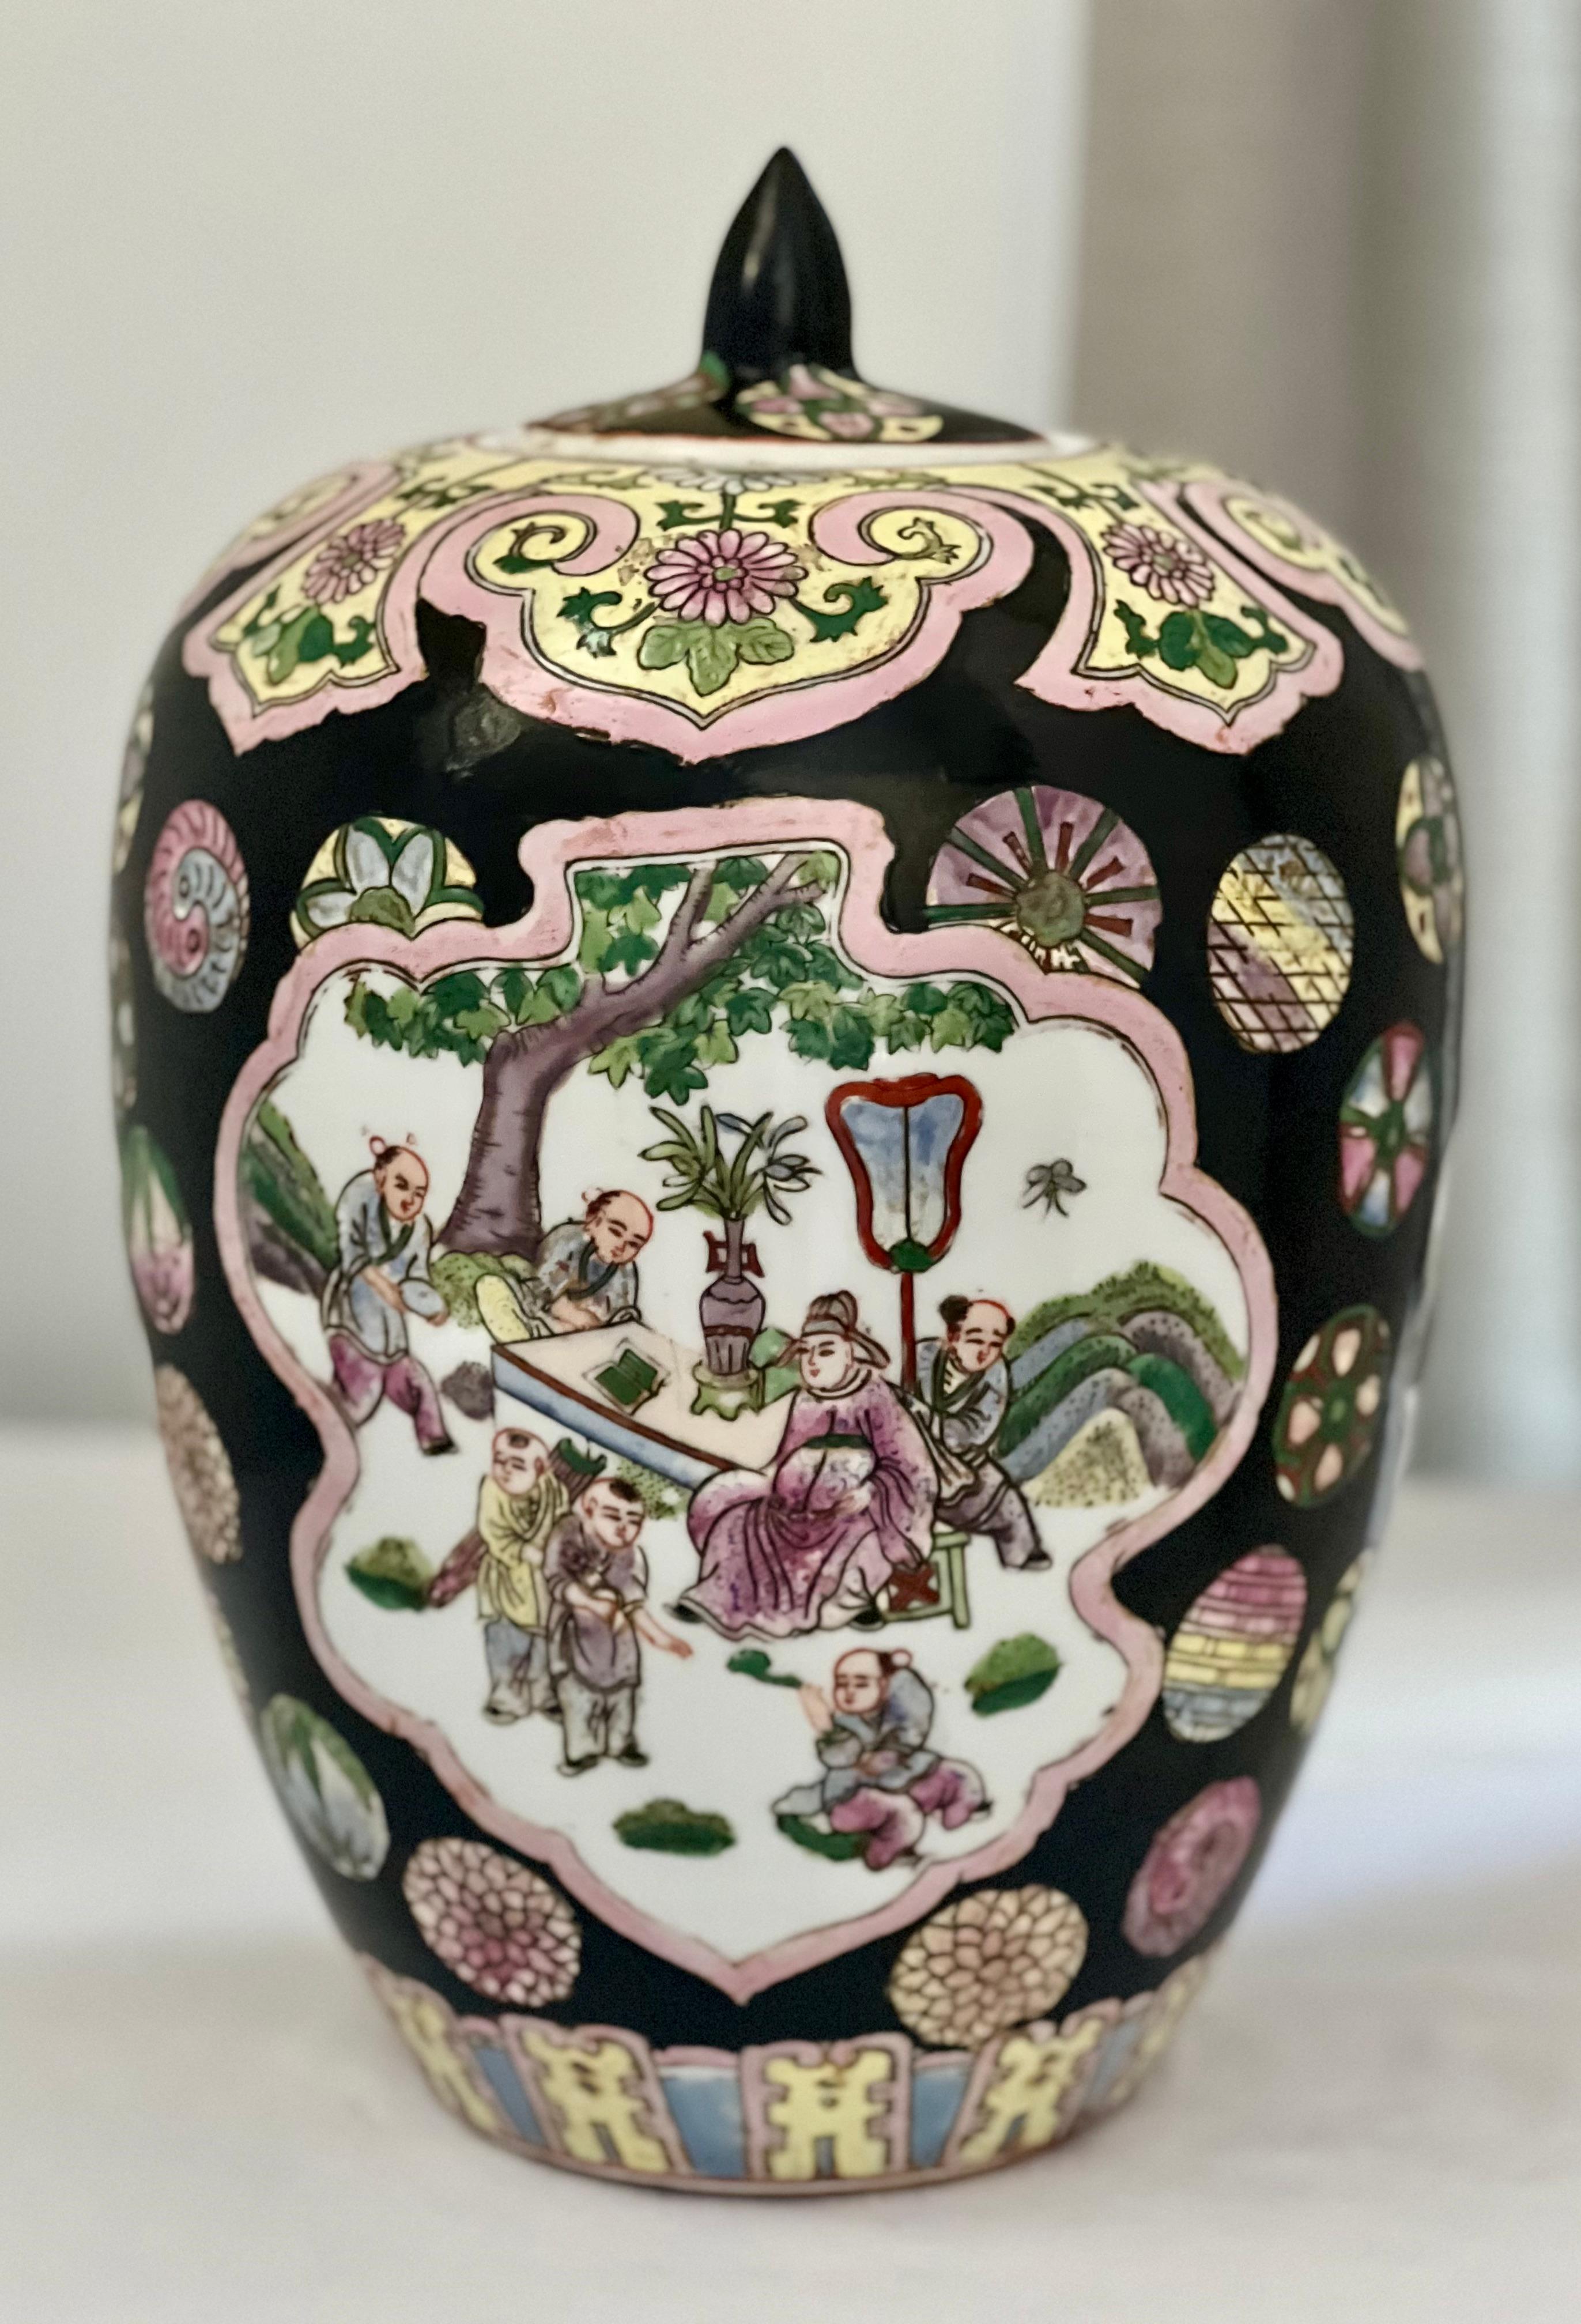 Vintage Chinese Famille Noire Porzellan Ingwer Glas mit Deckel, ca. 1920-30s.

Beeindruckender eiförmiger Krug, handbemalt mit leuchtenden Farben auf mattschwarzer Glasur. Jede Seite zeigt eine malerische Szene mit Figuren in einem Garten, die